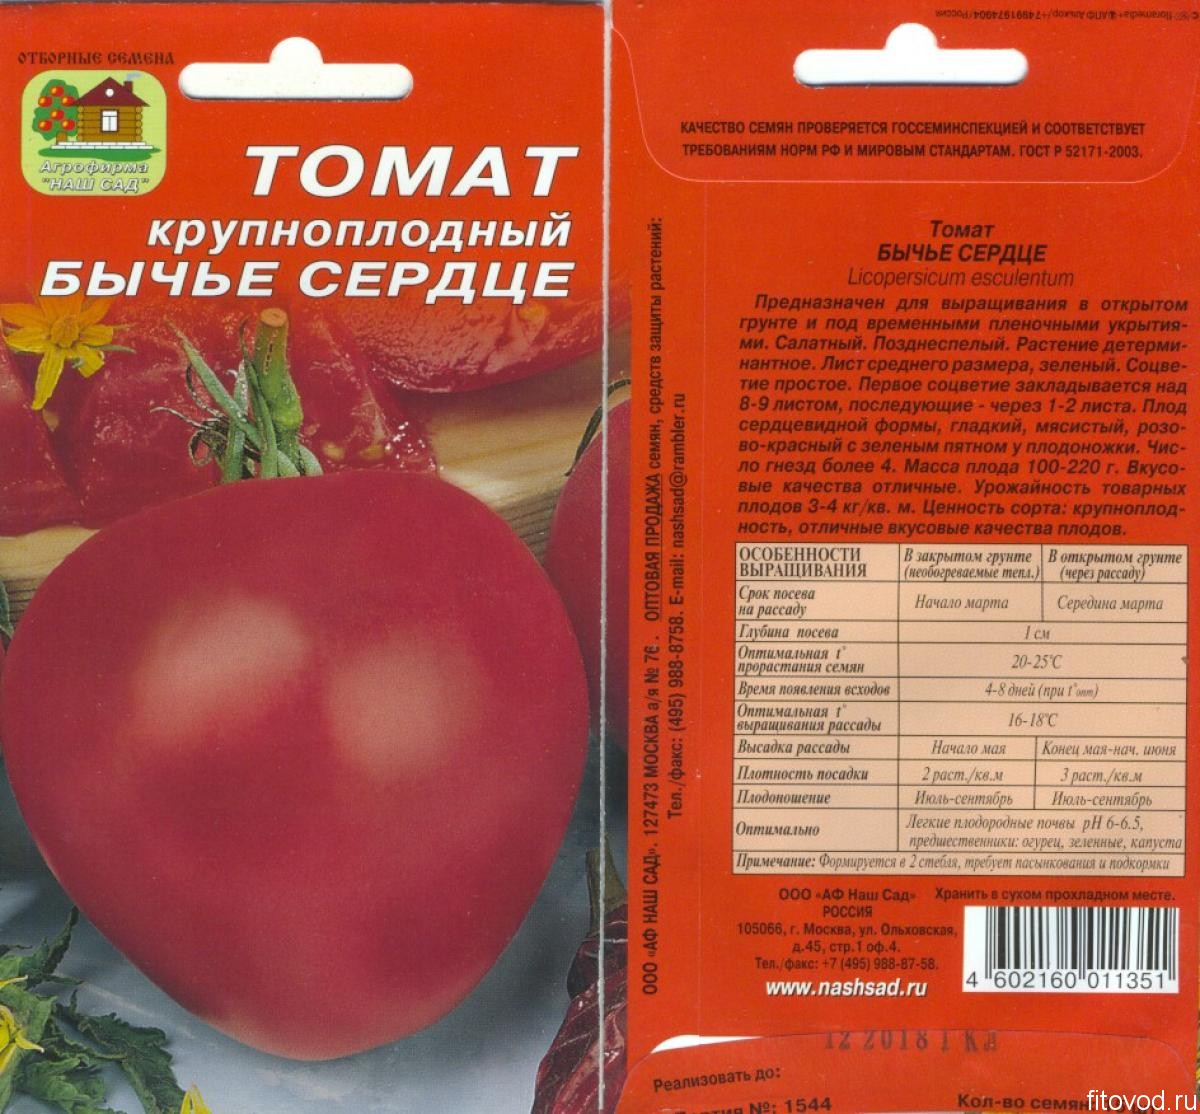 Выращиваем крошечные помидоры на грядке и в домашних условиях — томат «пуговка» и тонкости ухода за ним